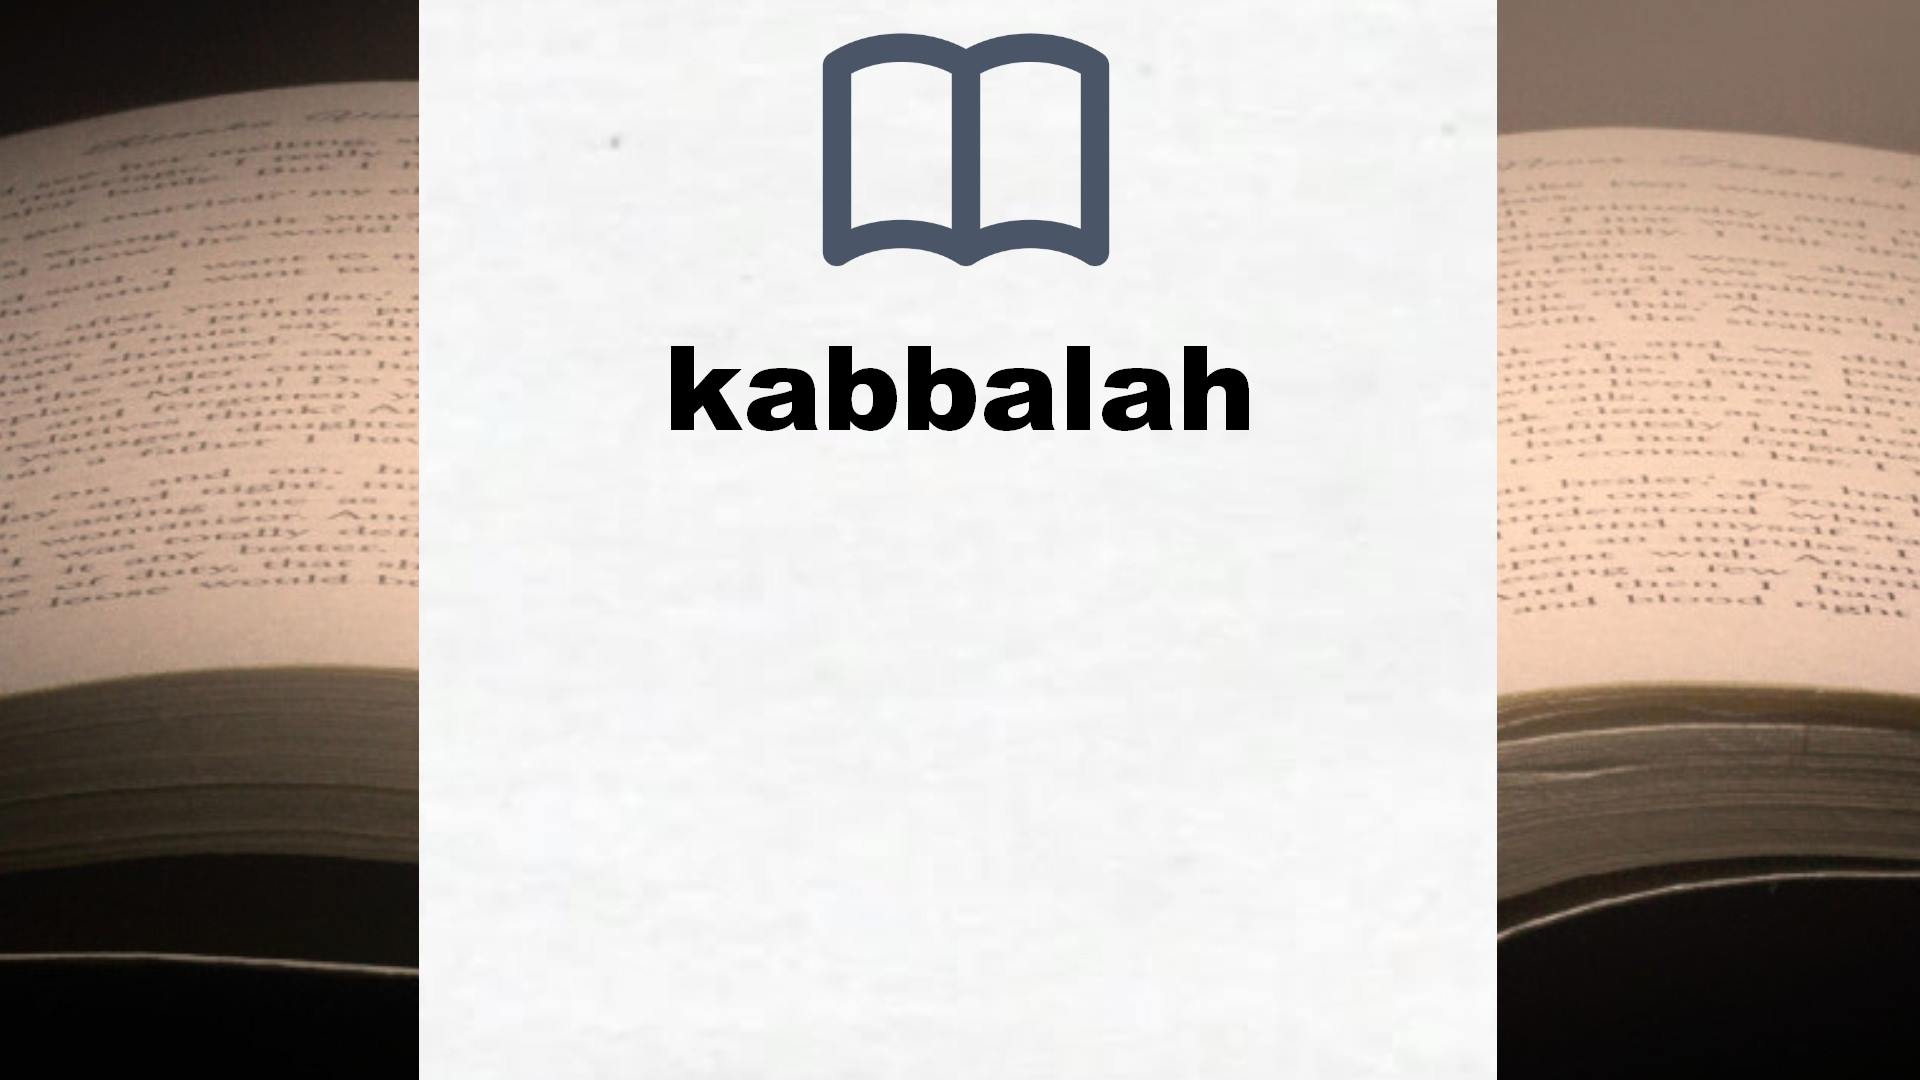 Libros sobre kabbalah